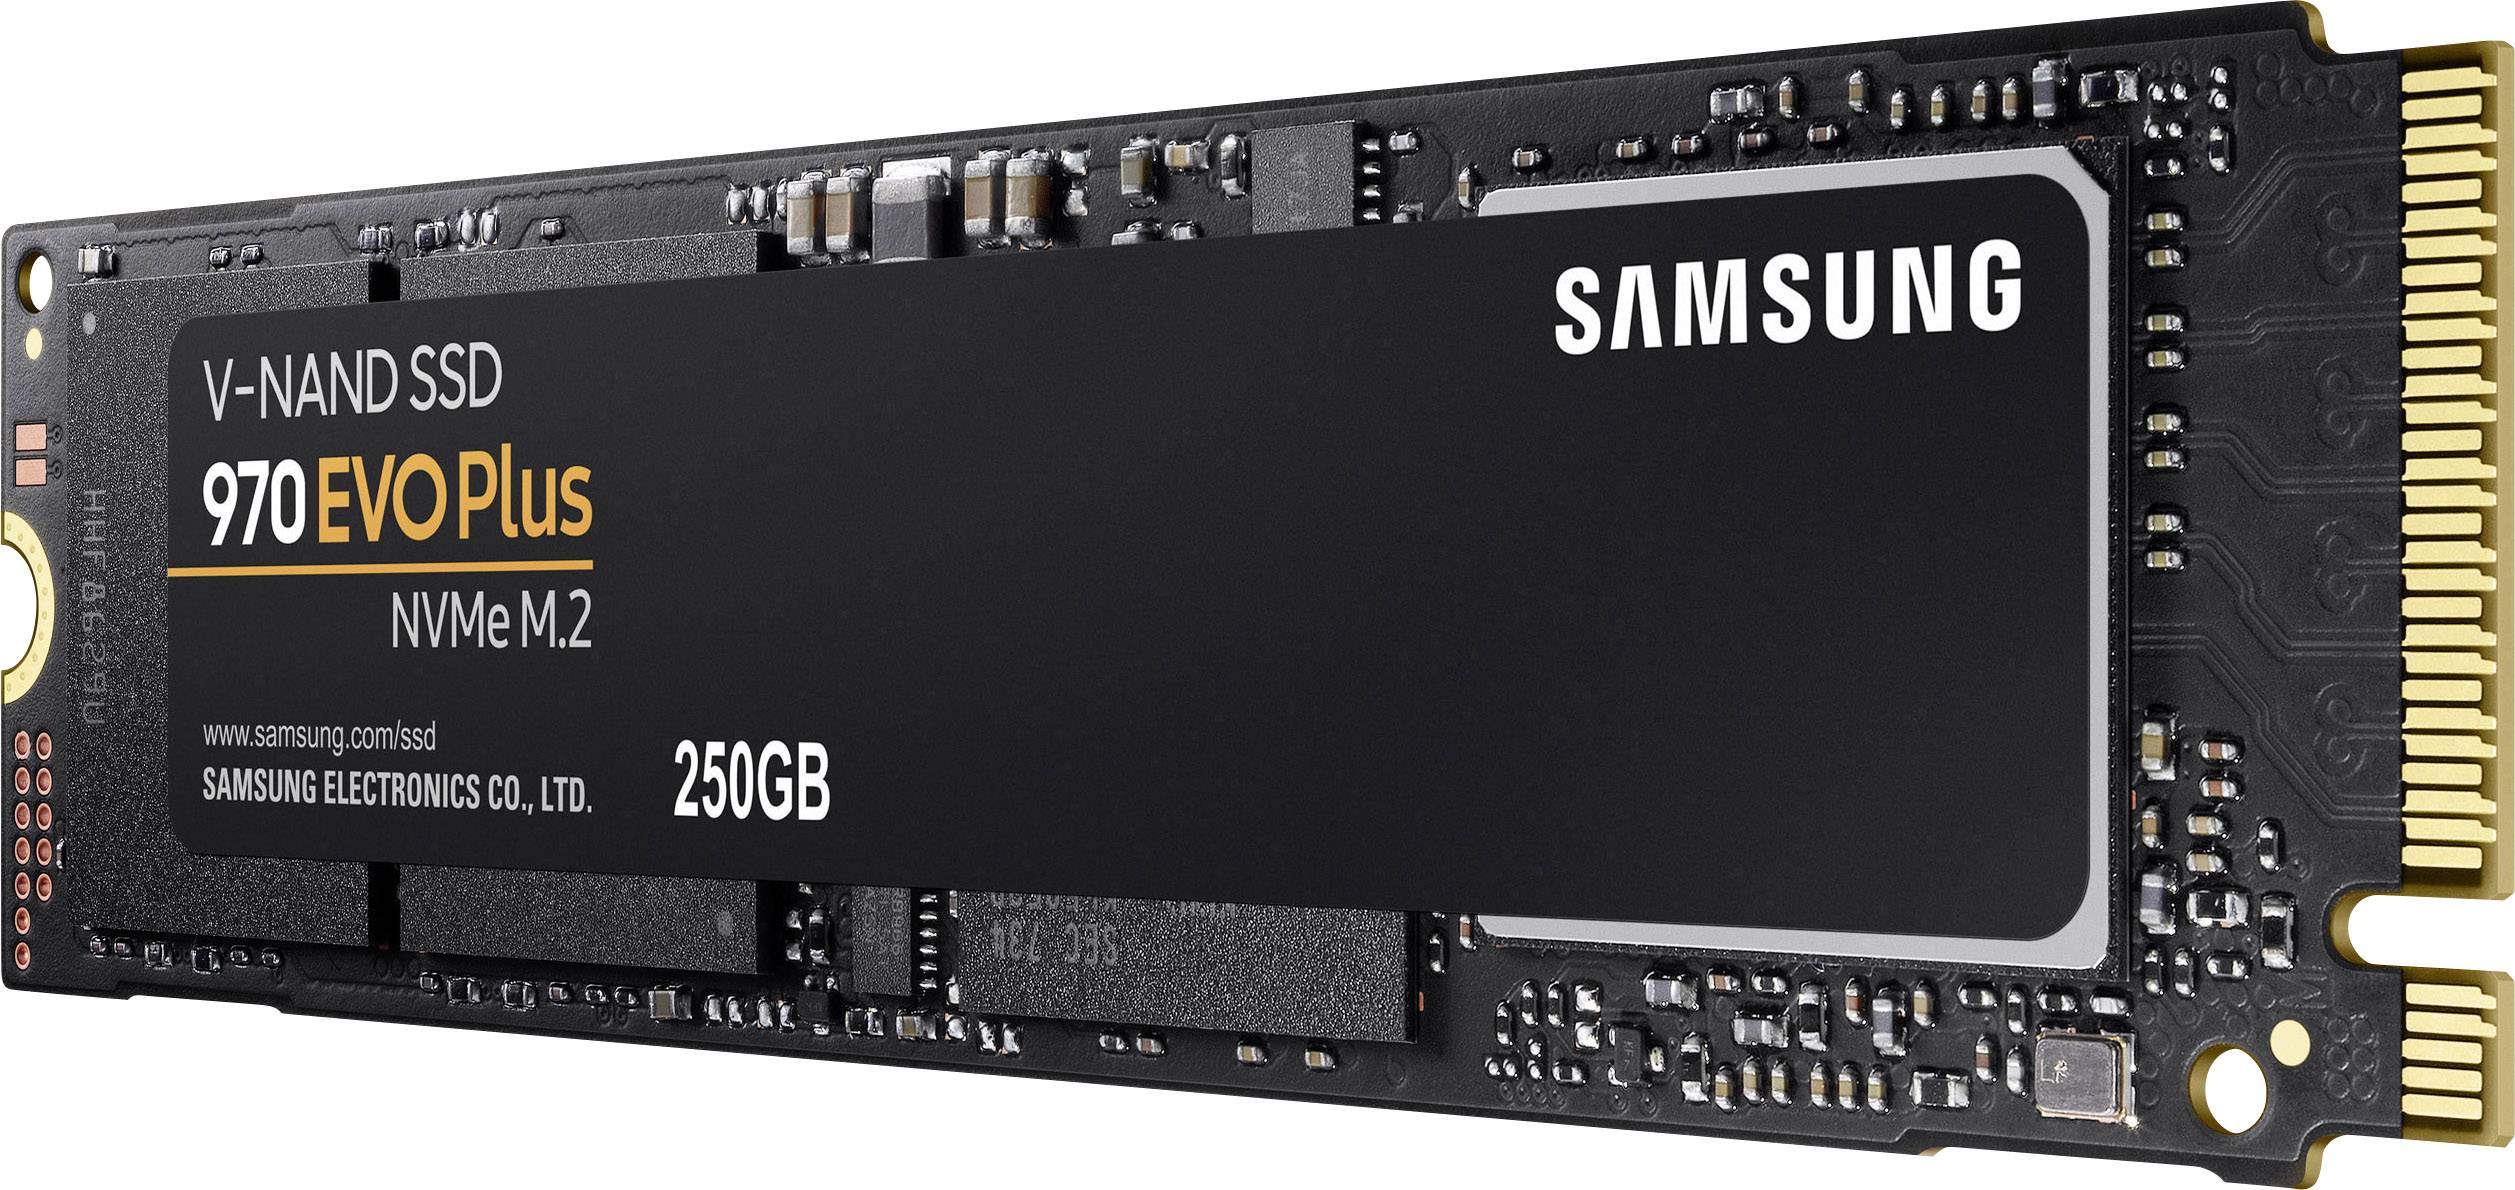 Samsung 970 EVO Plus 250 GB NVMe/PCIe M.2 internal SSD M.2 PCIe 3.0 x4 Retail MZ-V7S250BW | Conrad.com